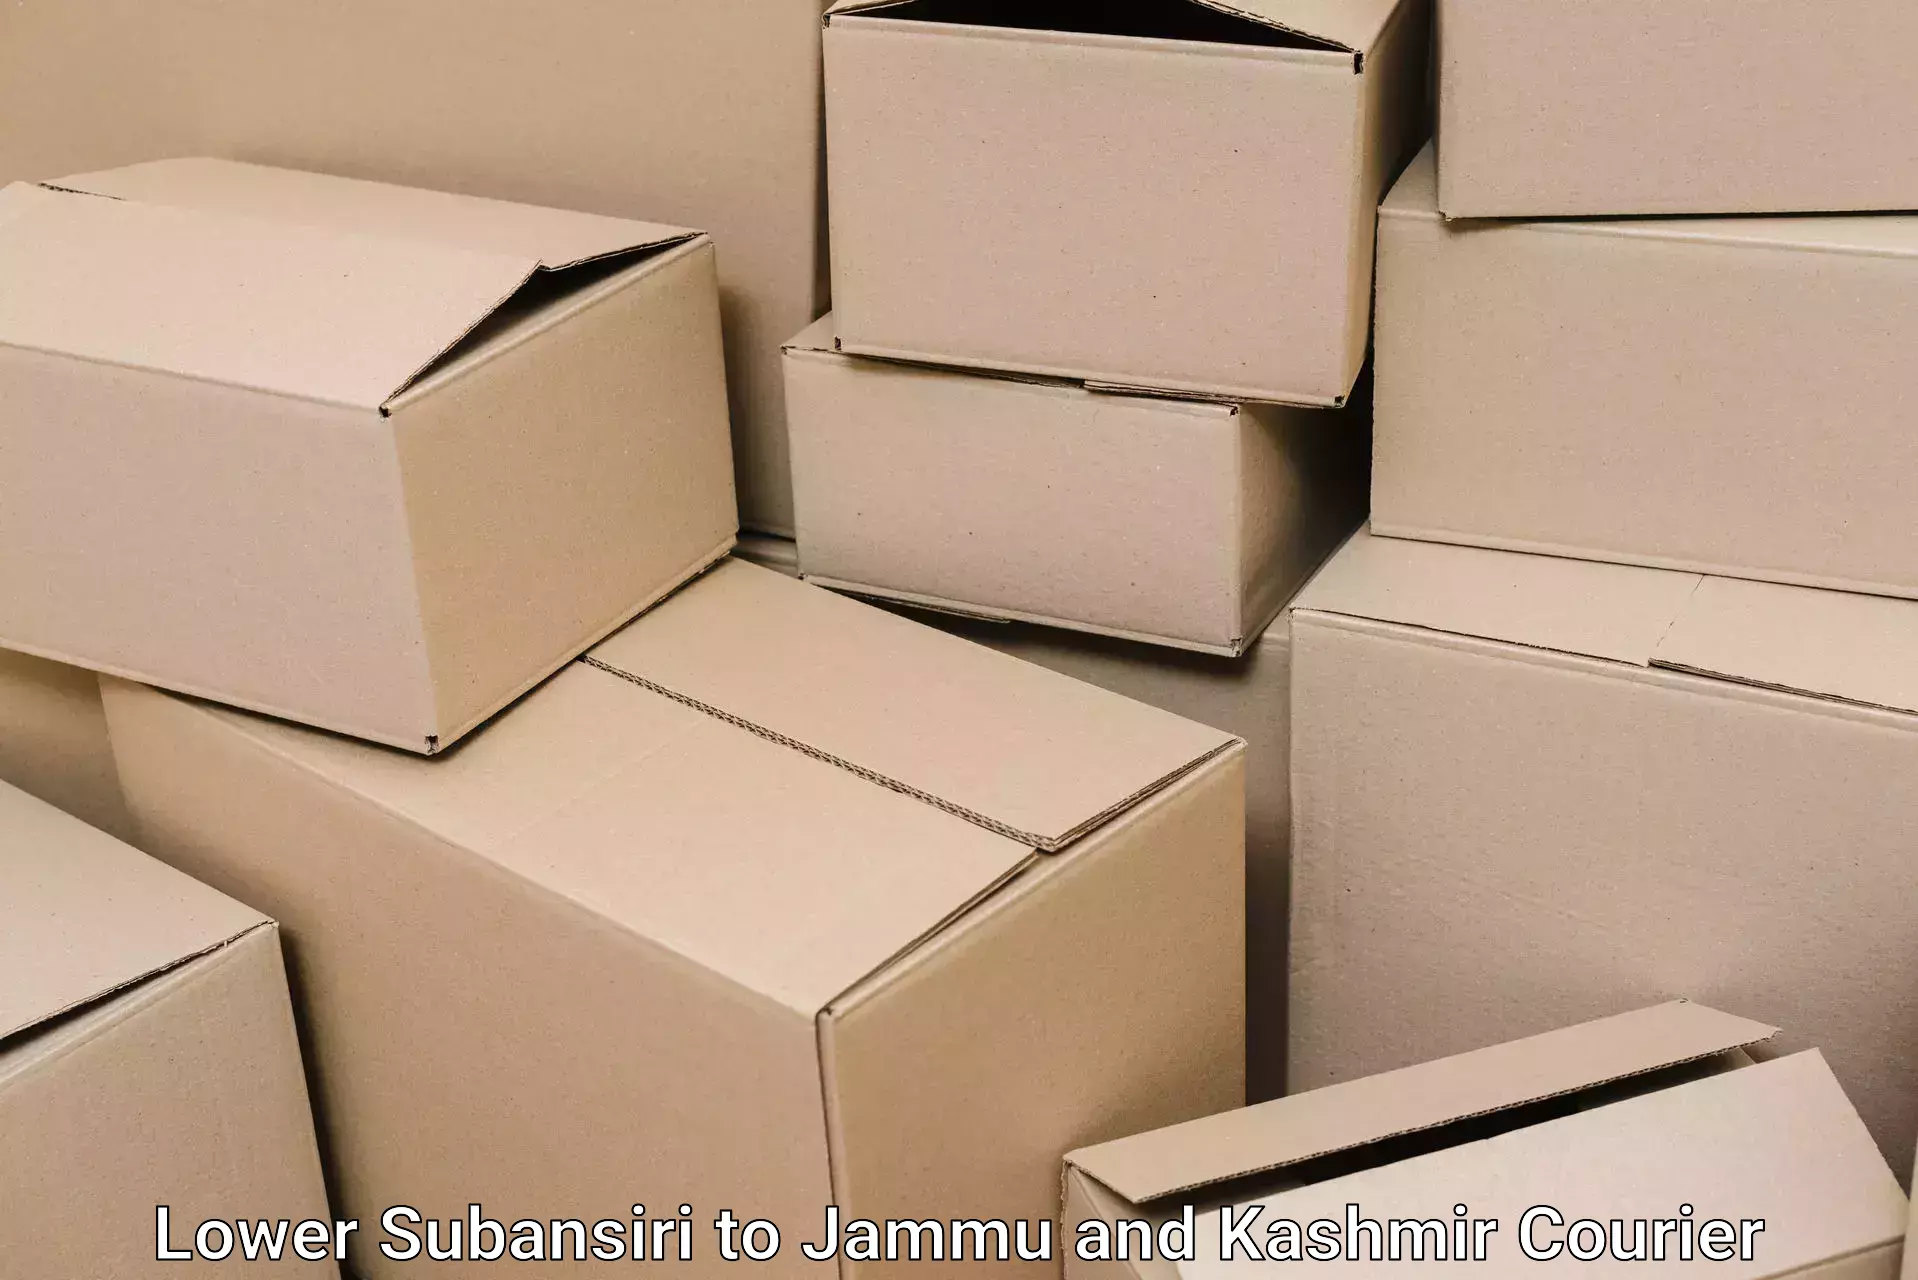 Furniture shipping services Lower Subansiri to Kupwara